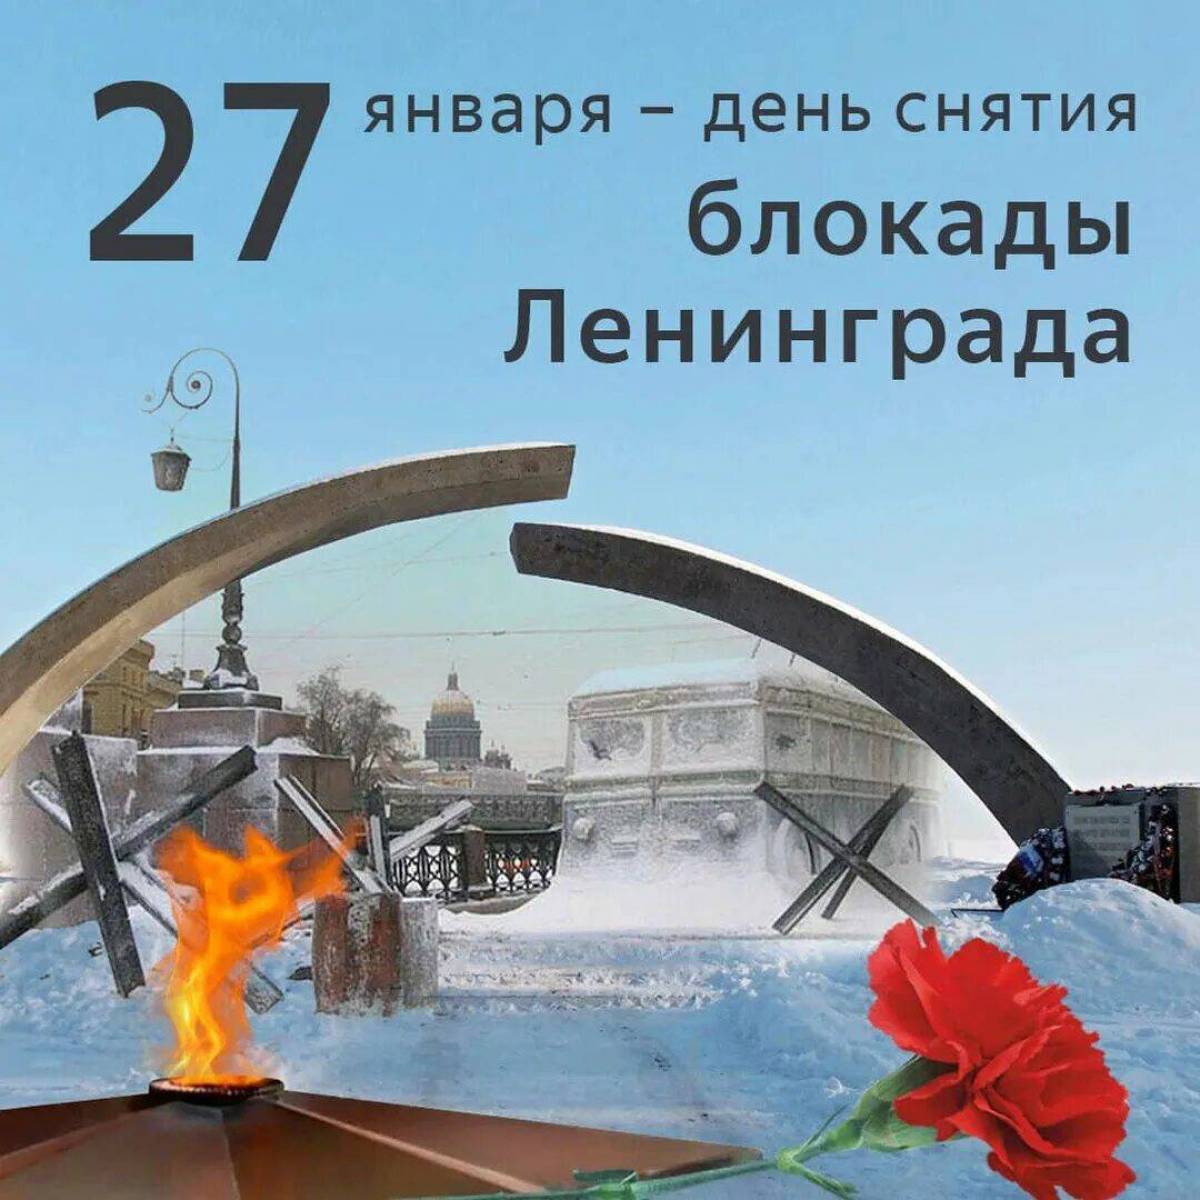 Снятие блокады ленинграда #12